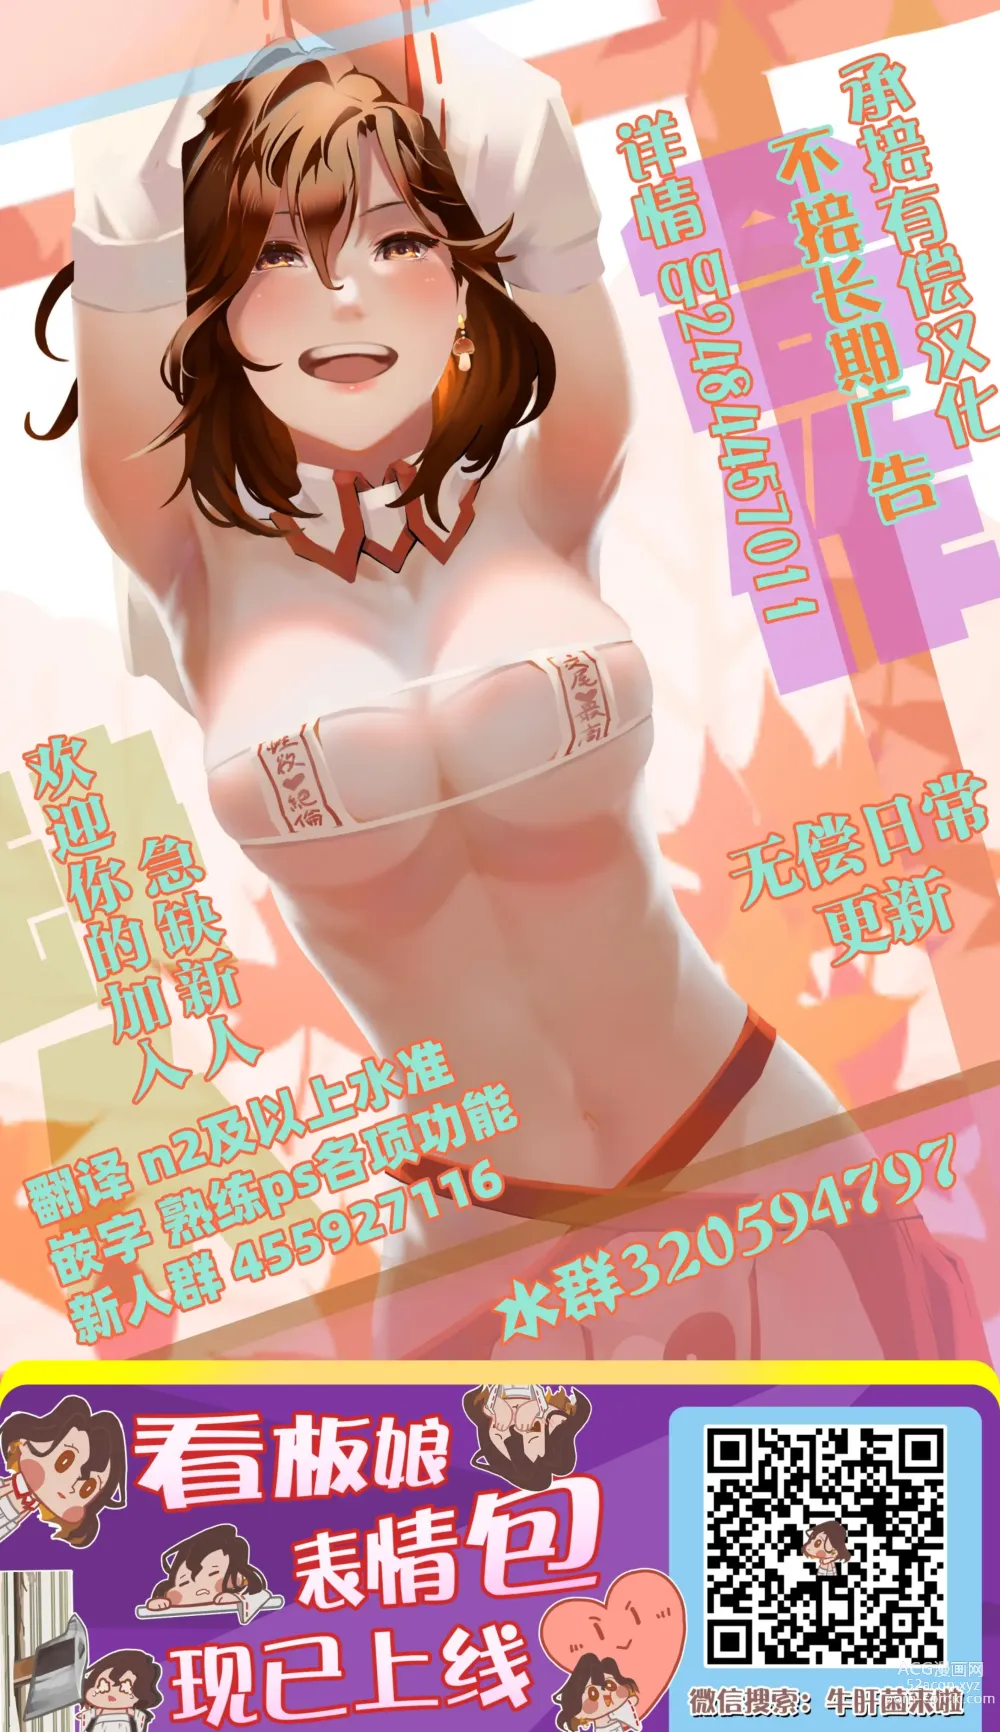 Page 39 of manga 貞操観念ゼロの女友達と秘密基地